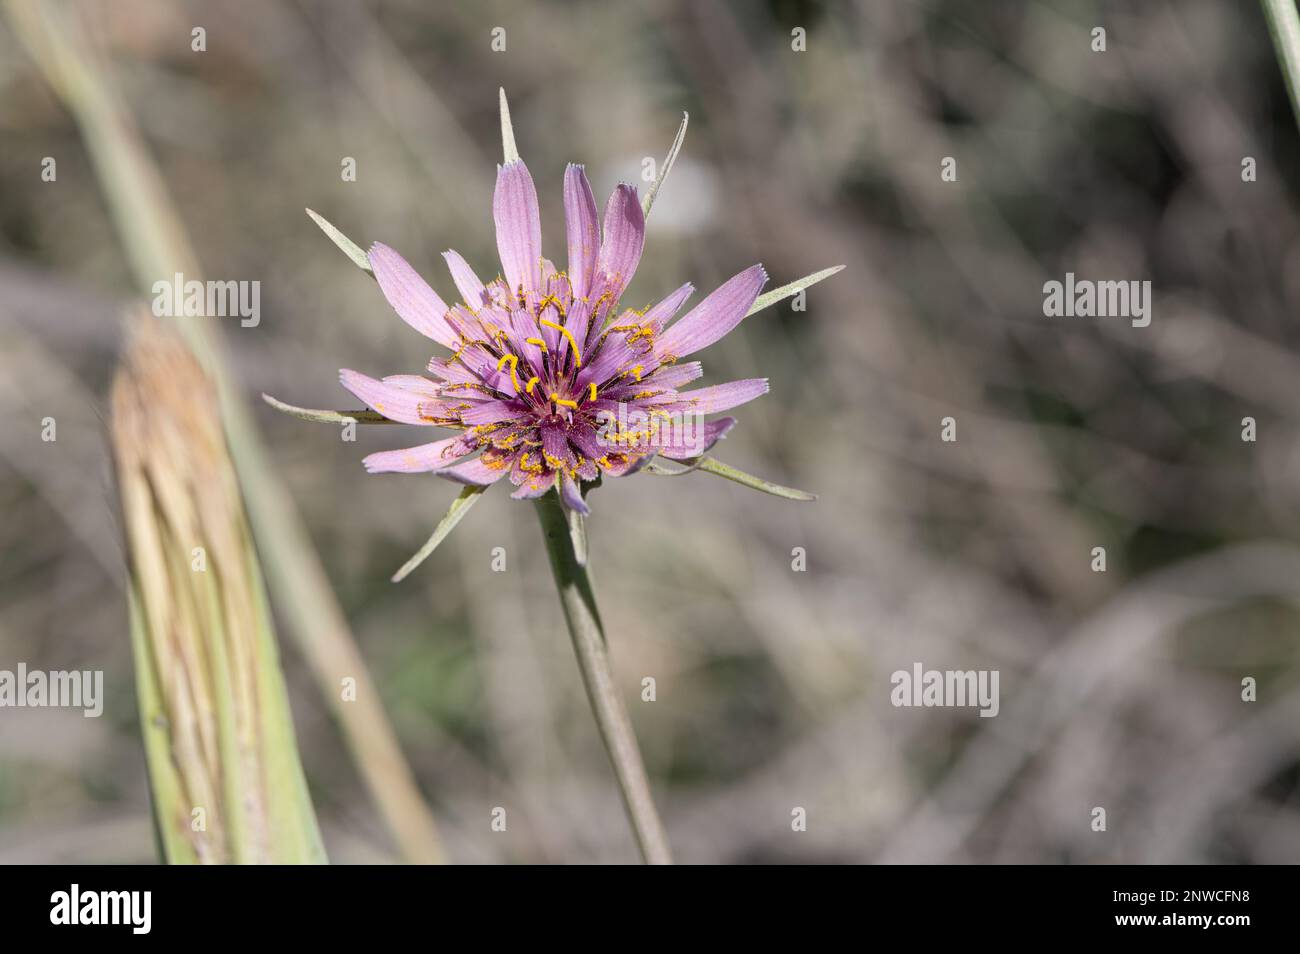 Gros plan sur une fleur de salsifis rosa crauvage, arrière-piano flou gris, soleil matinal Foto Stock